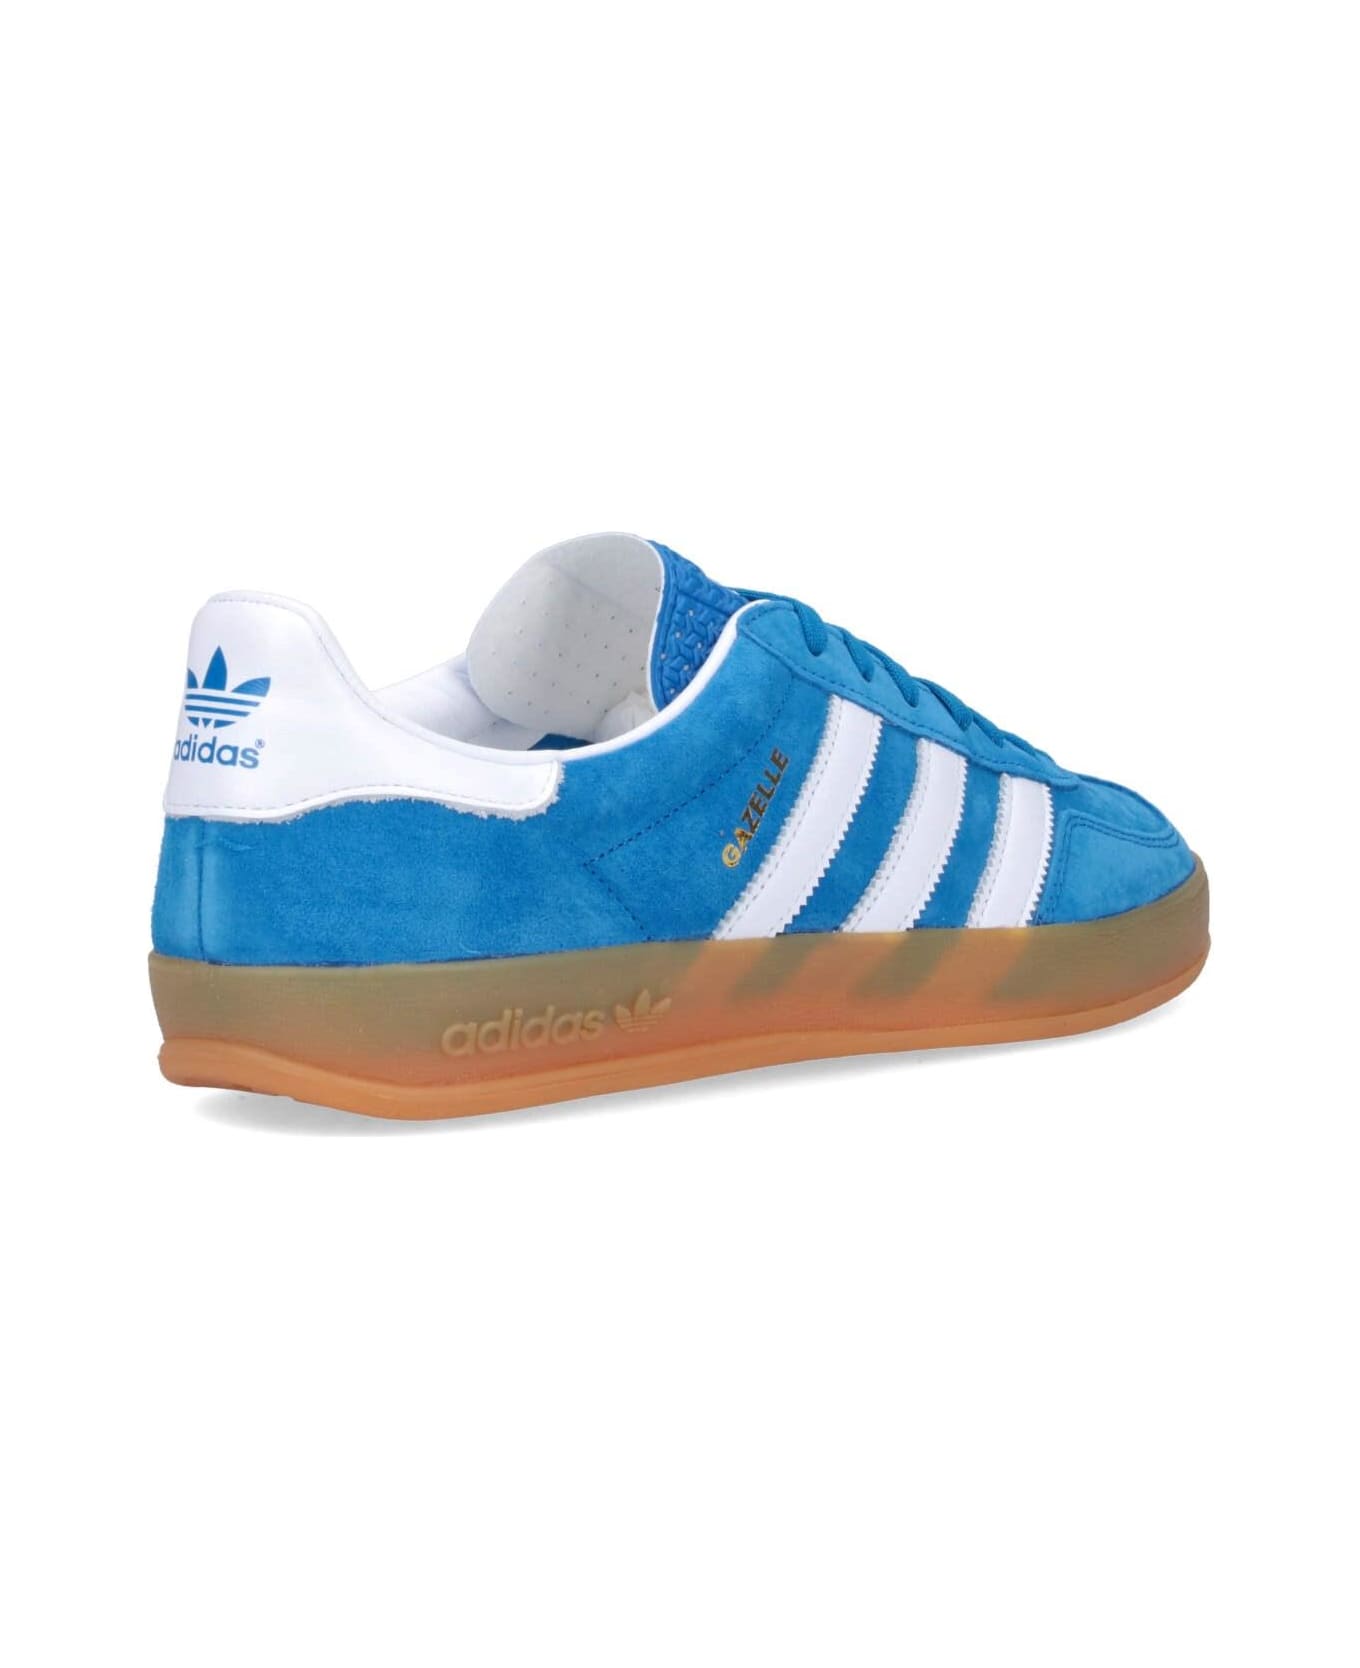 Adidas Originals 'gazelle Indoor' Sneakers - Blubir/ftwwht/blubir